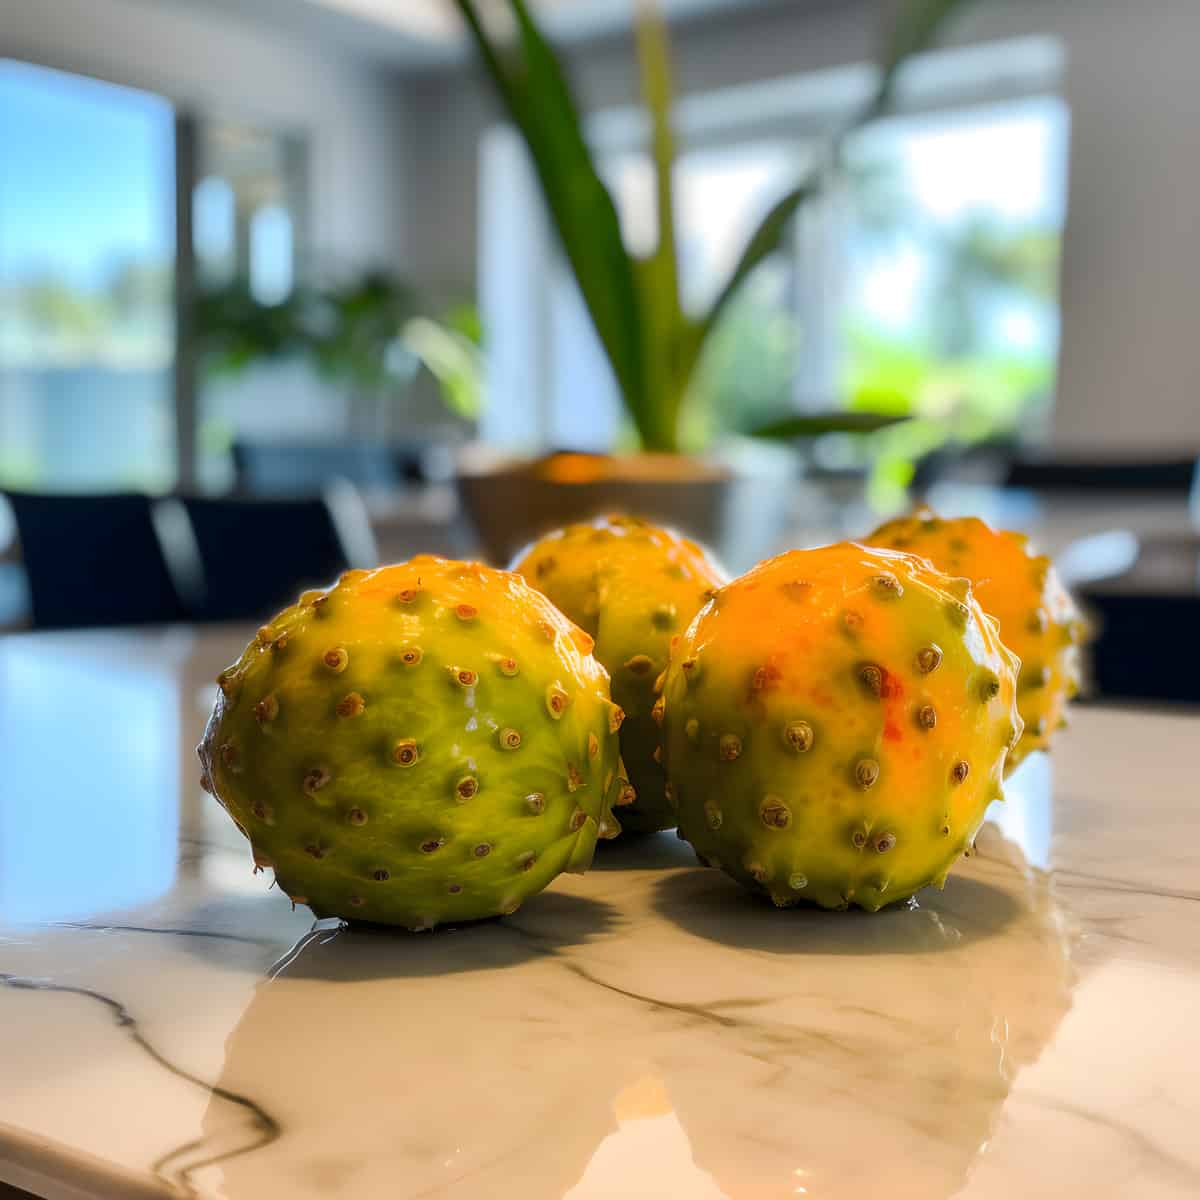 Sampang Fruit on a kitchen counter